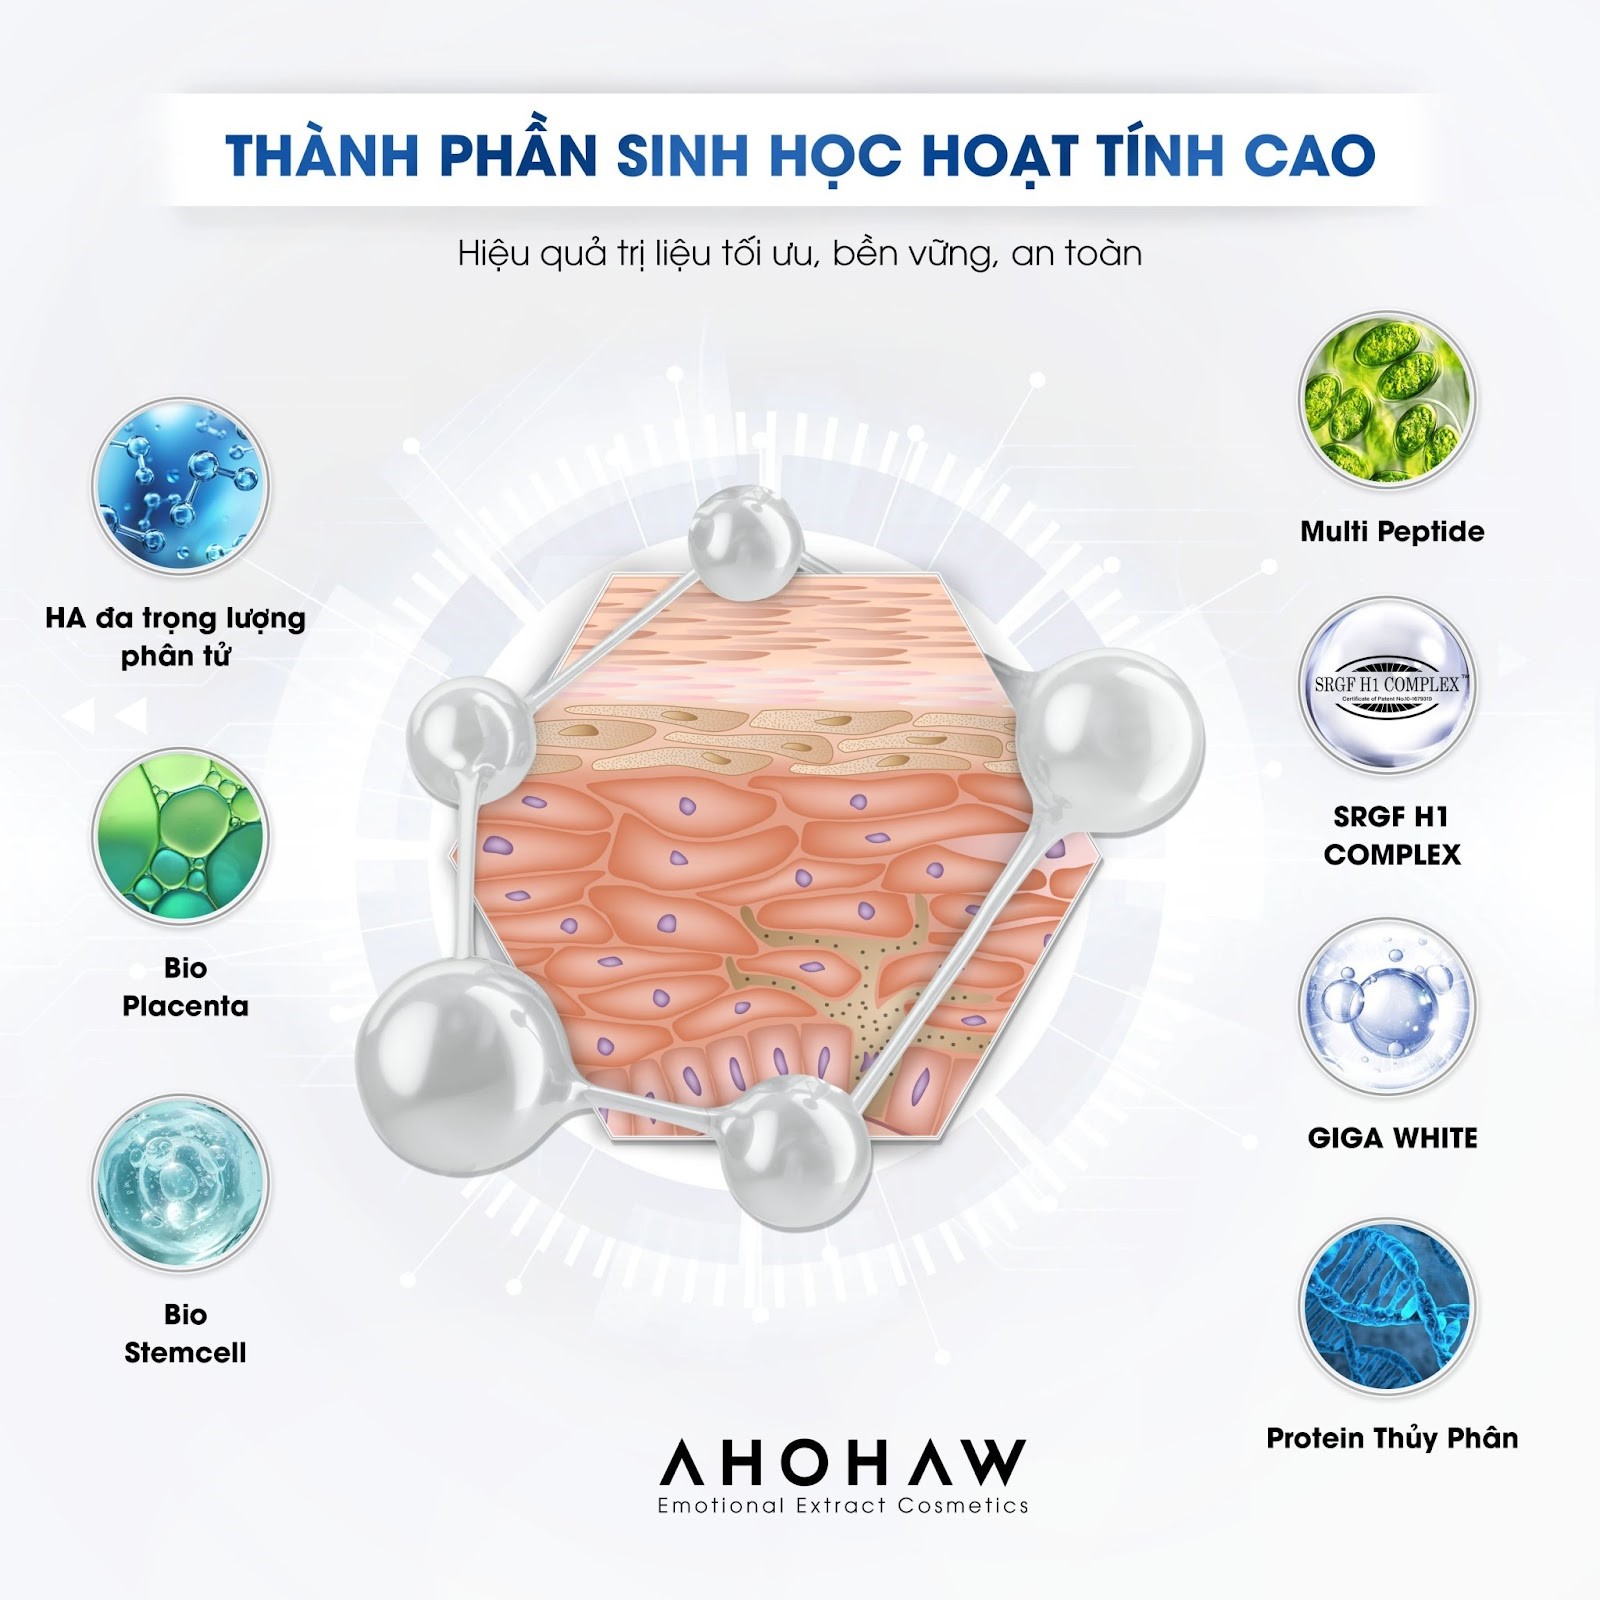 Dược mỹ phẩm sinh học cao cấp Ahohaw: sự lựa chọn hàng đầu cho phụ nữ Châu Á hiện đại - 2